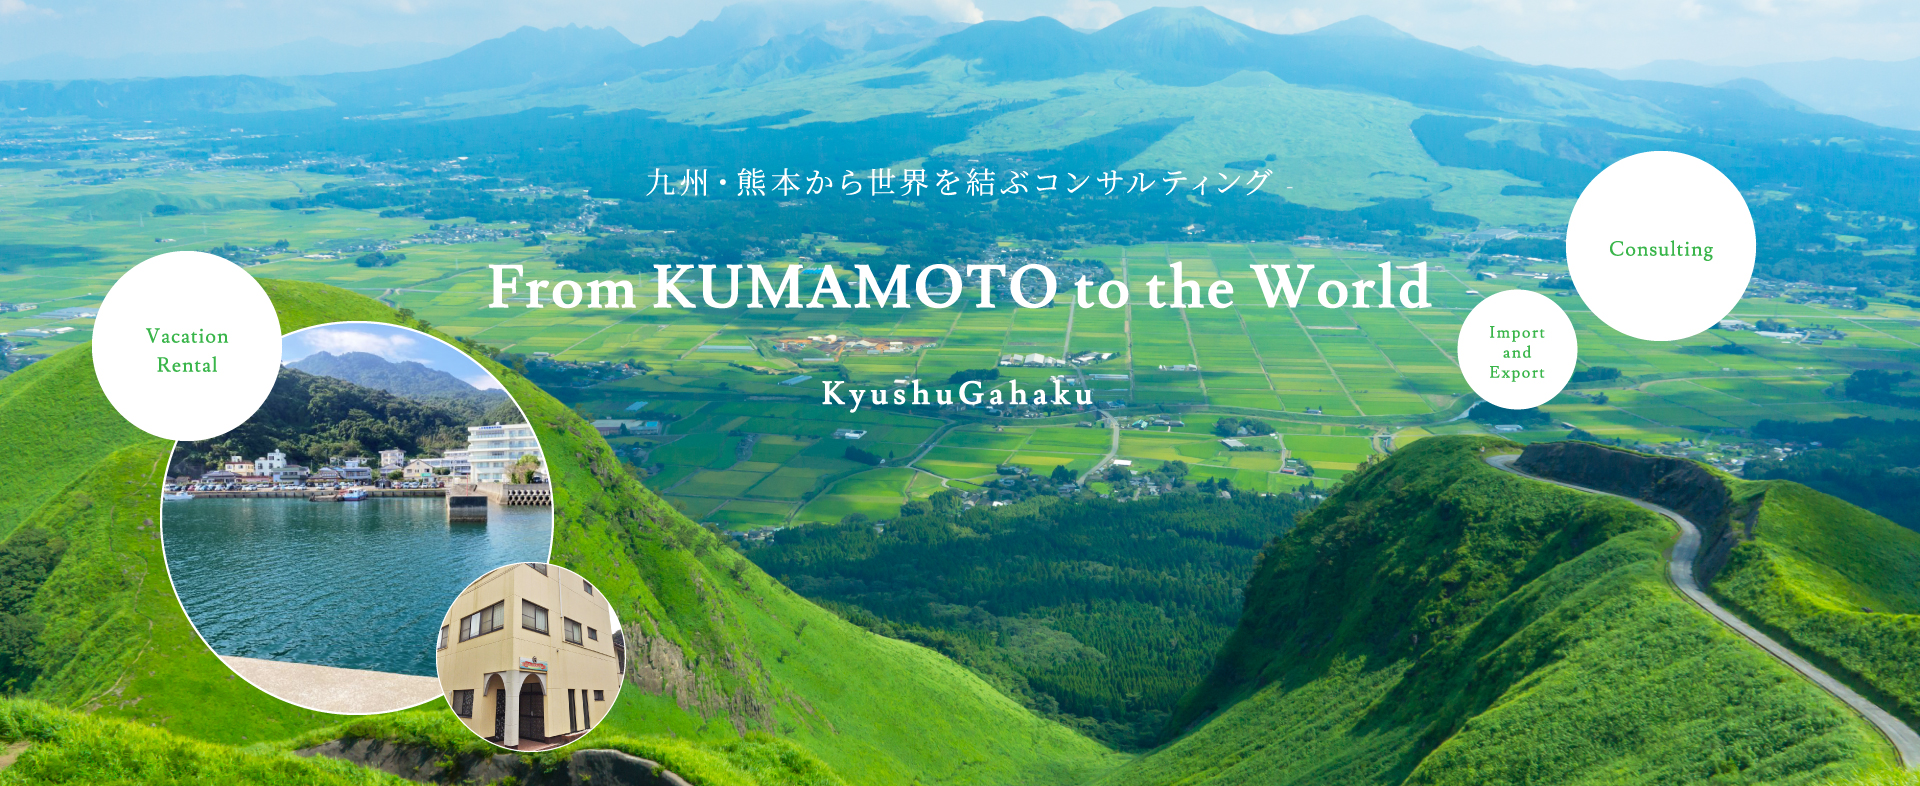 九州・熊本から世界を結ぶコンサルティング From KUMAMOTO to the World KyushuGahaku